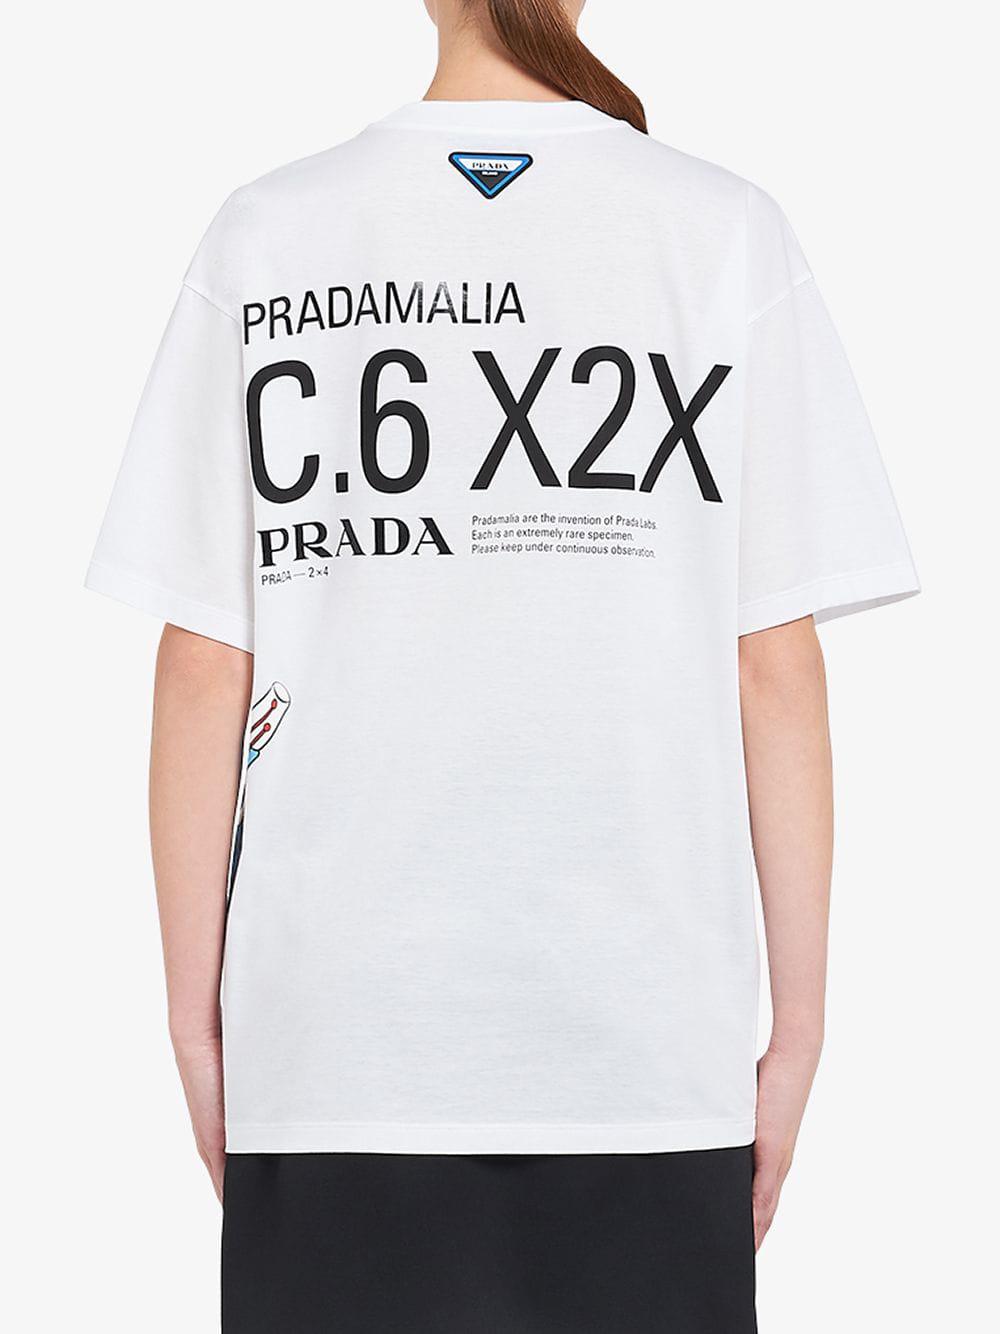 pradamalia t shirt, OFF 77%,www 